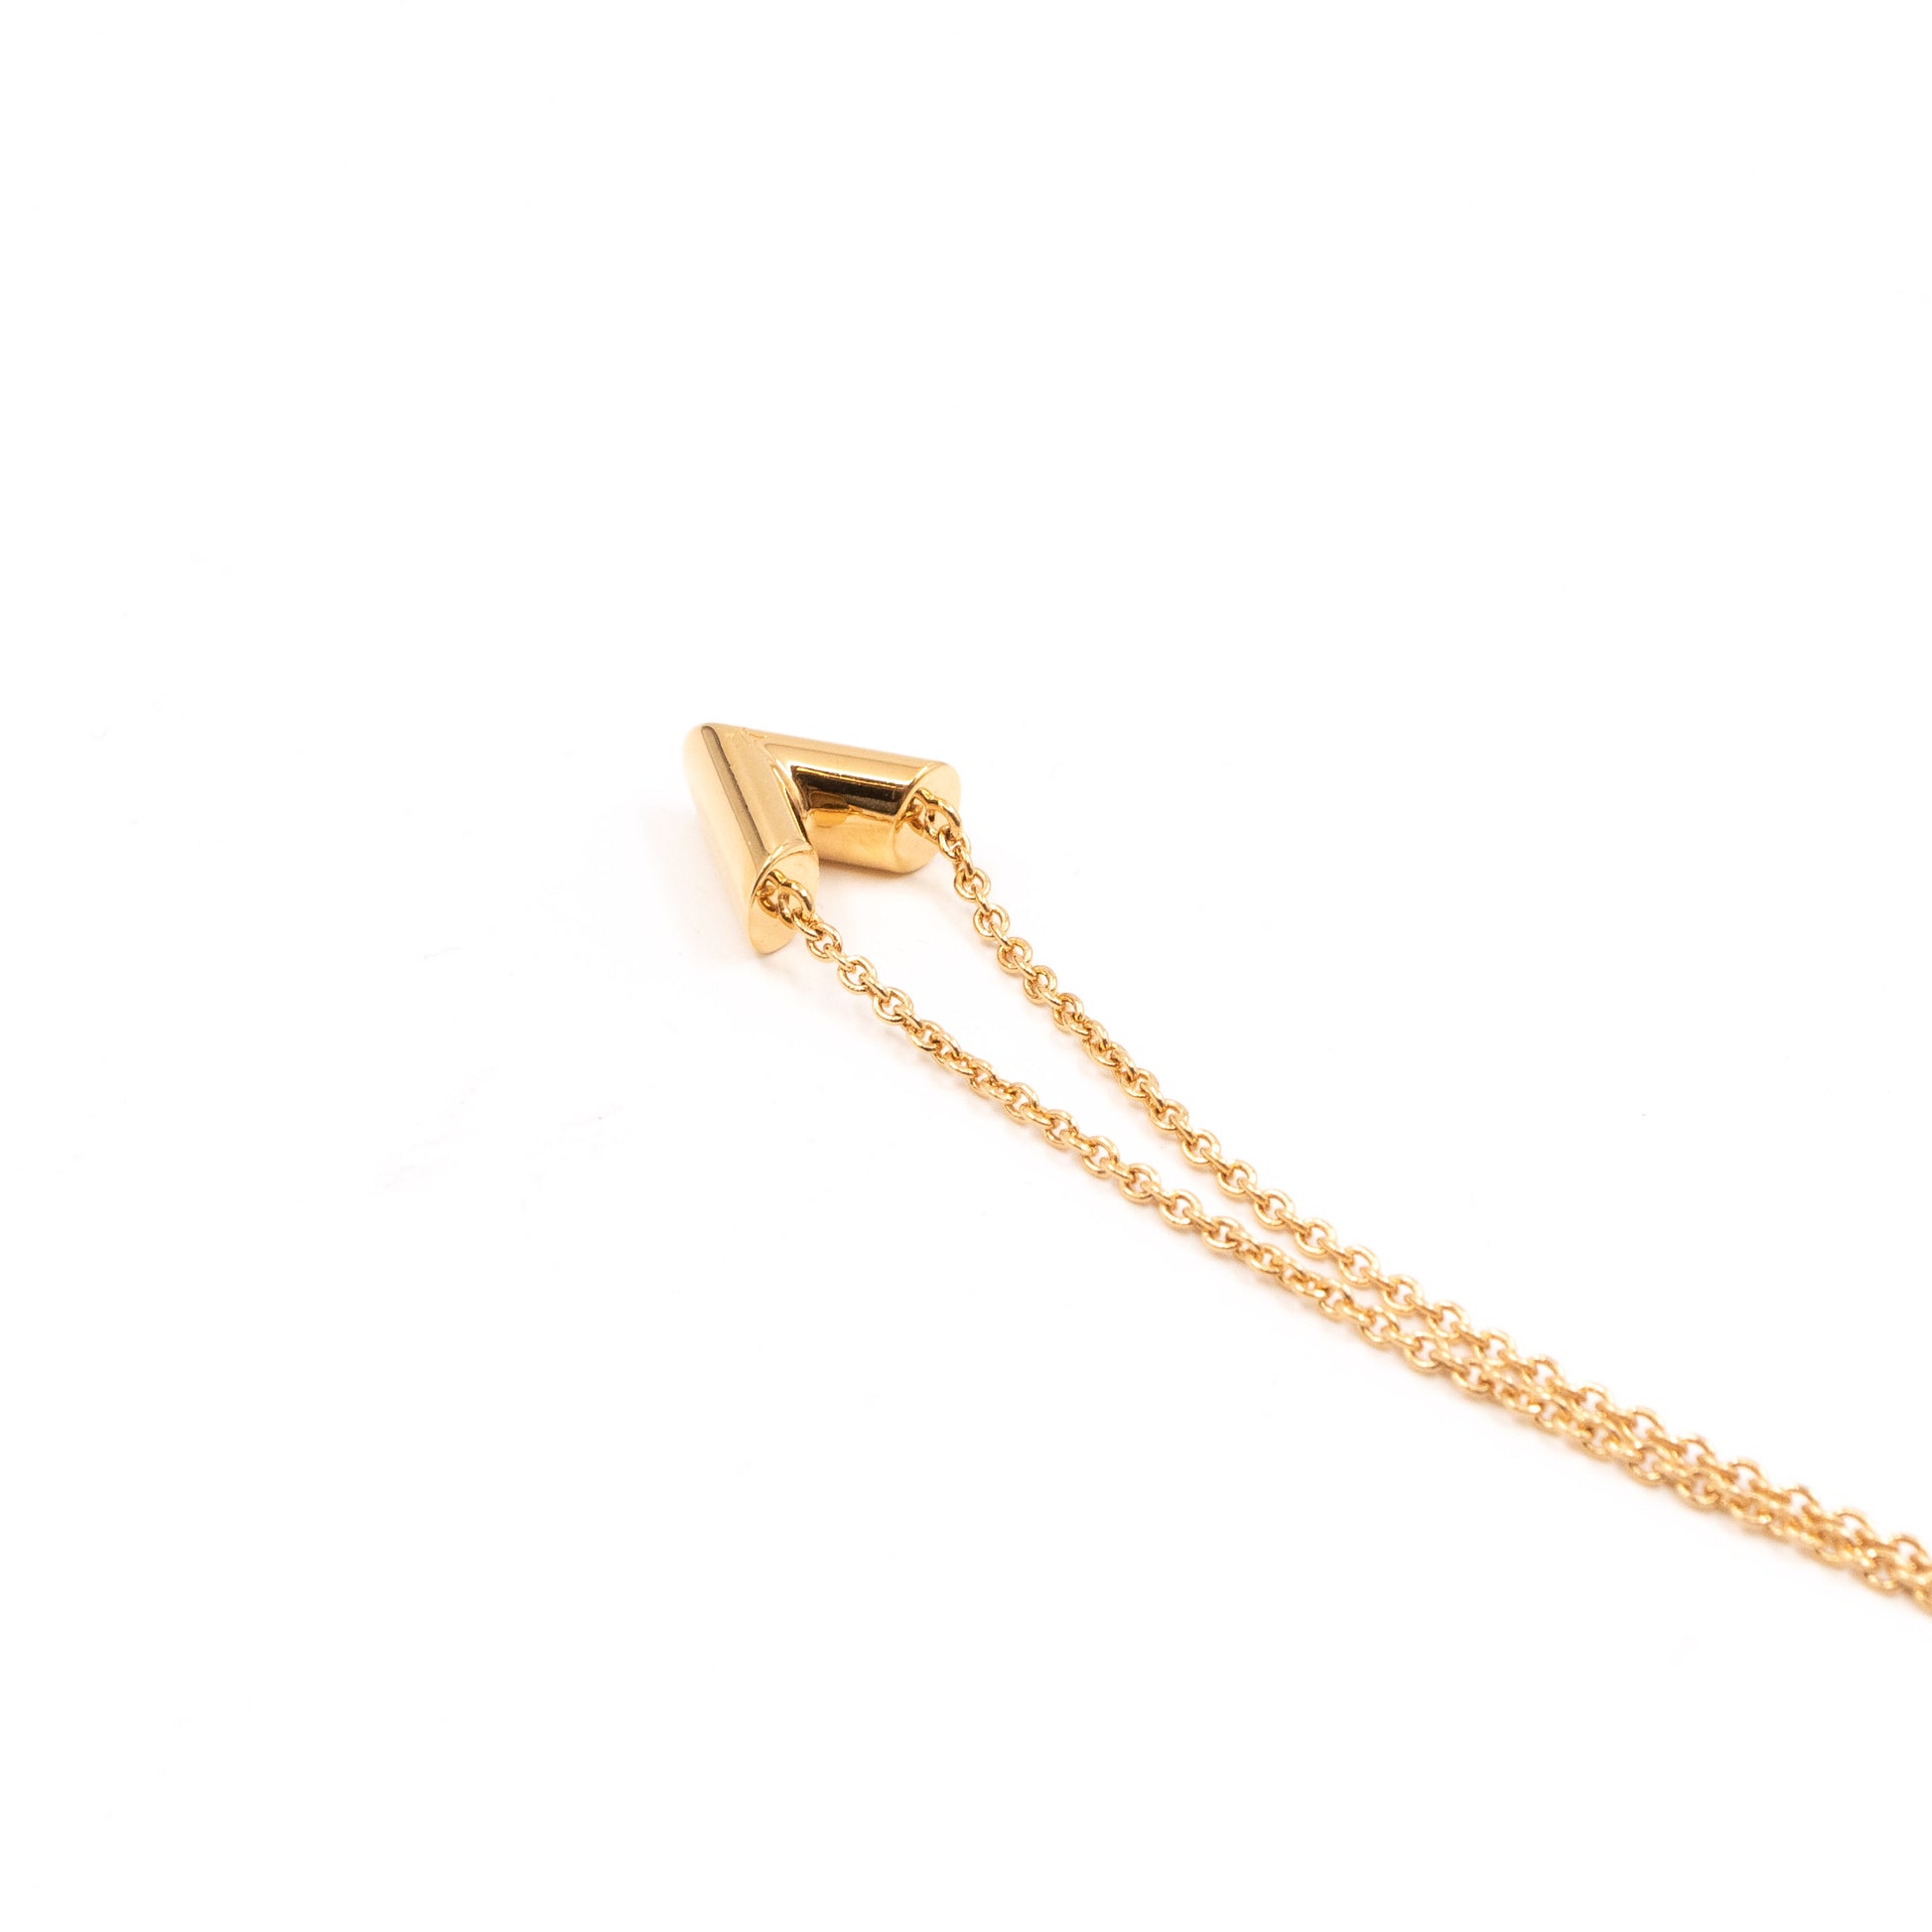 NTWRK - Louis Vuitton Essential V Necklace (LE0179)